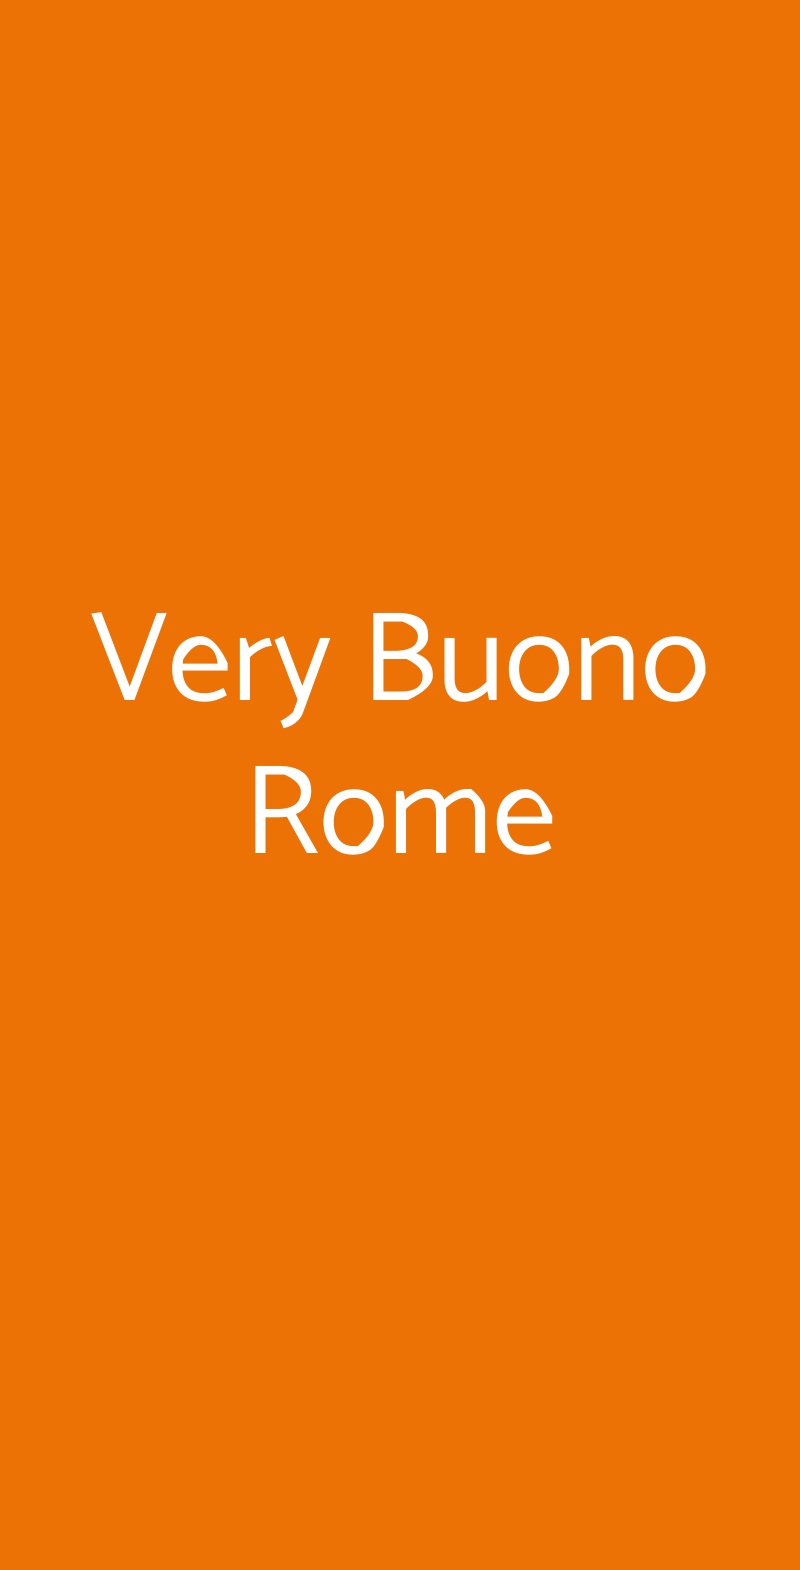 Very Buono Rome Roma menù 1 pagina